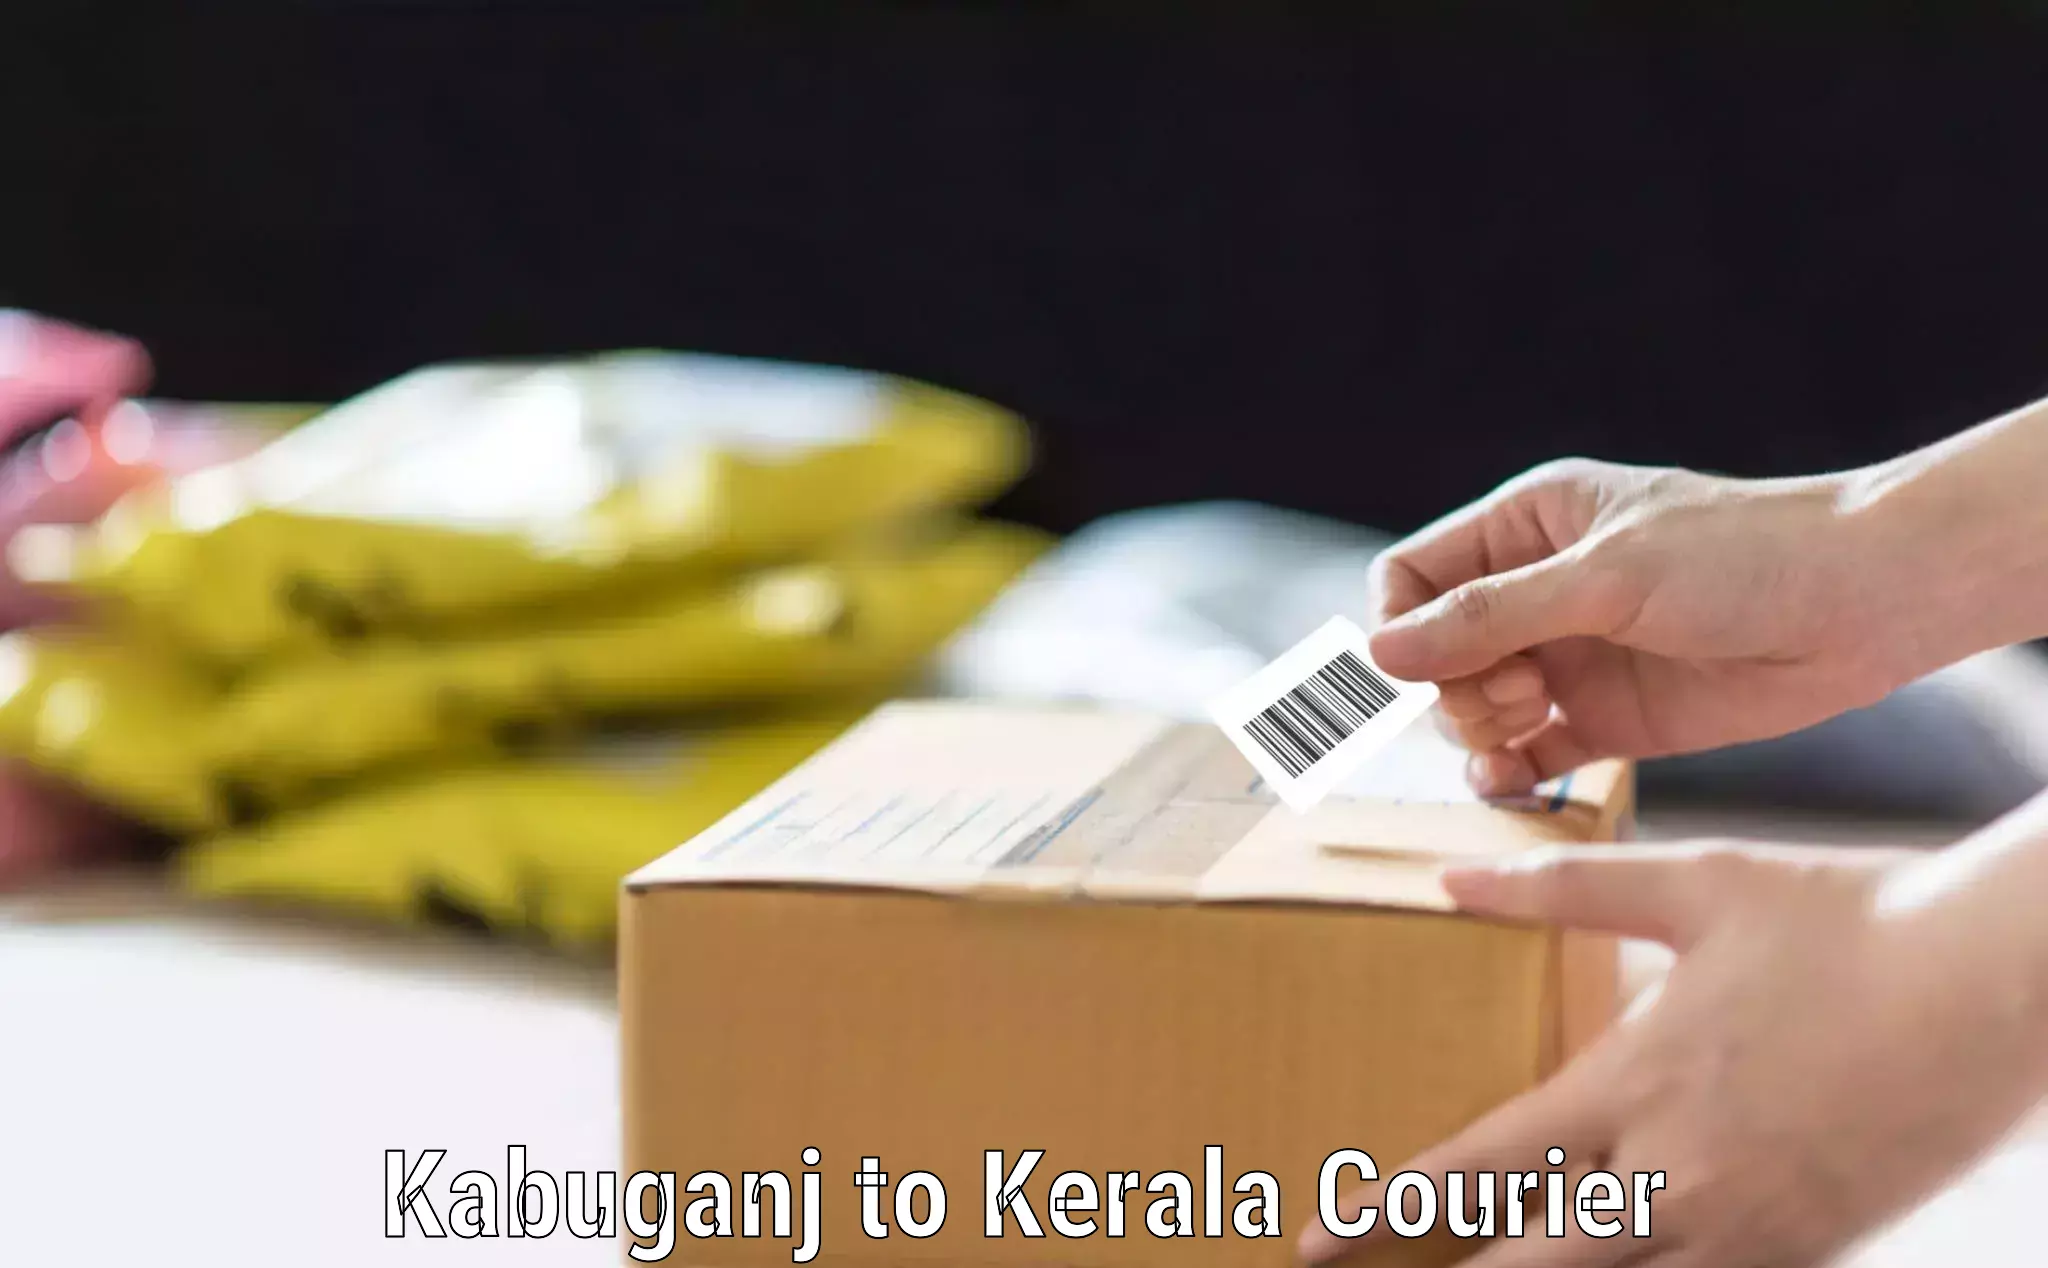 Digital baggage courier Kabuganj to Kerala